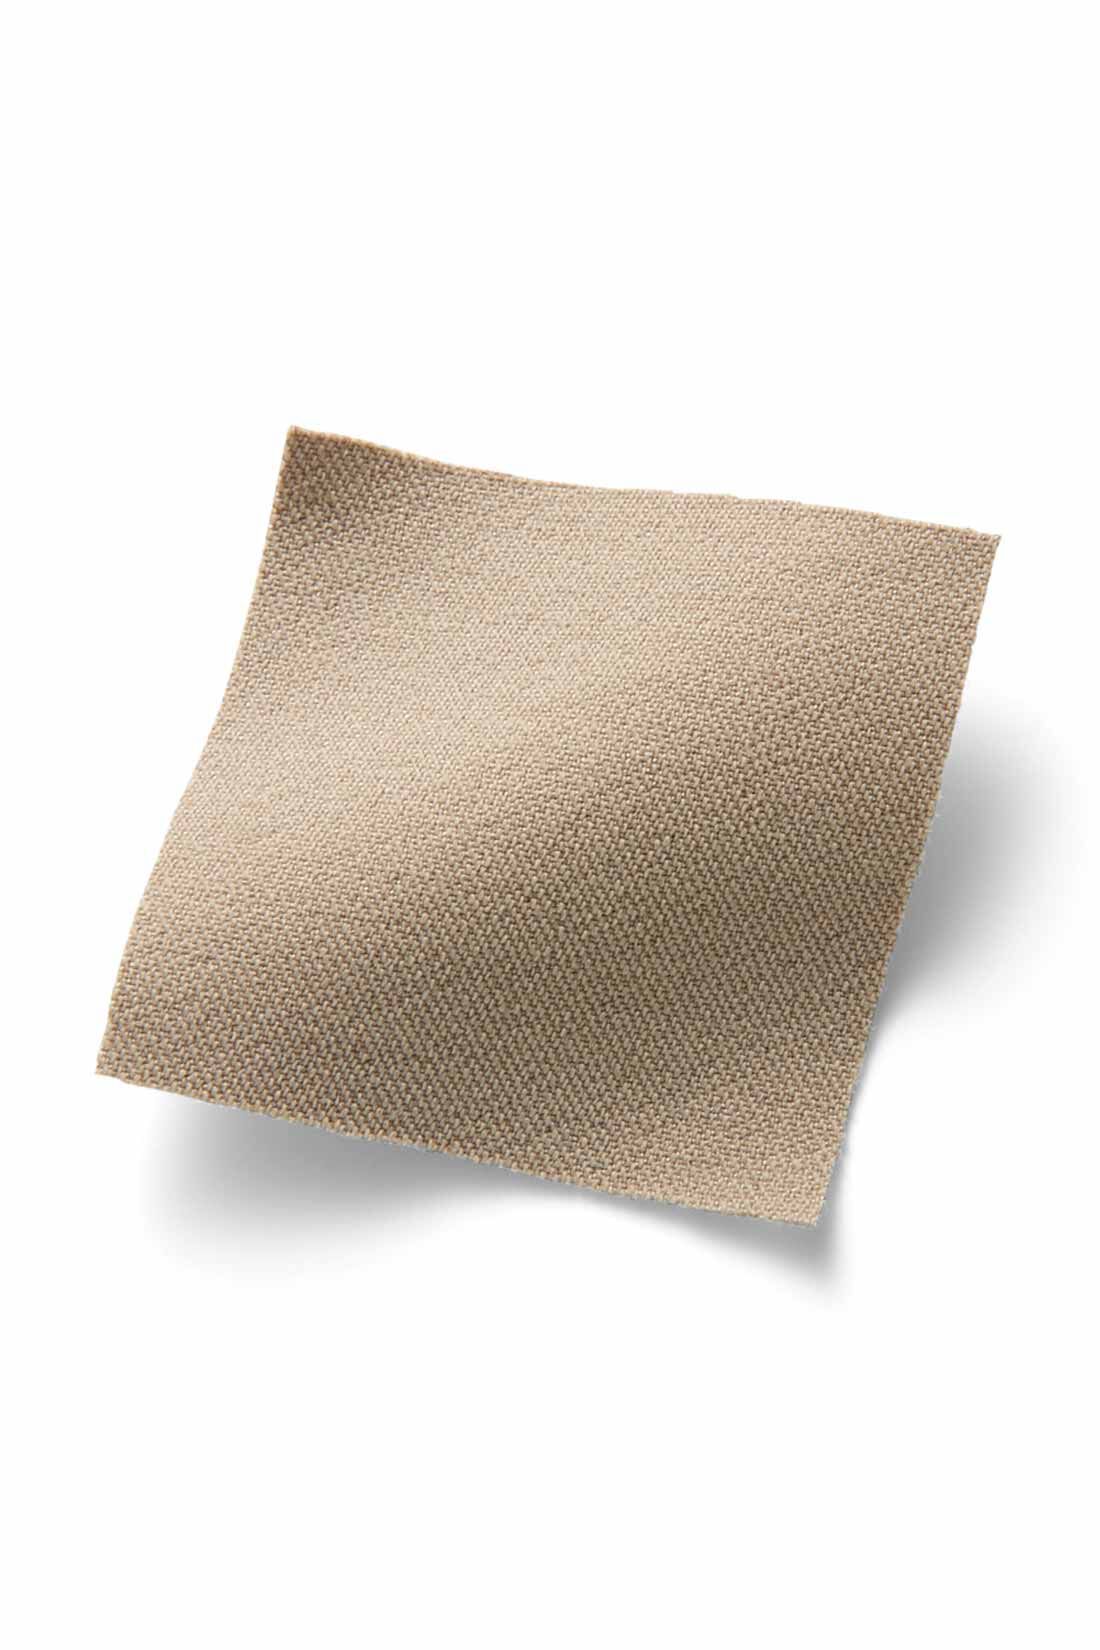 IEDIT|IEDIT[イディット]　ぐいっとしなやか すらりと美脚！ ストレッチ布はく素材のエアノビテーパードパンツ〈ベージュ〉|ストレッチ素材ながら綿のようなマットな表面感が品よくきれい。脚のラインを拾いにくい厚みと張り感で高見えします。